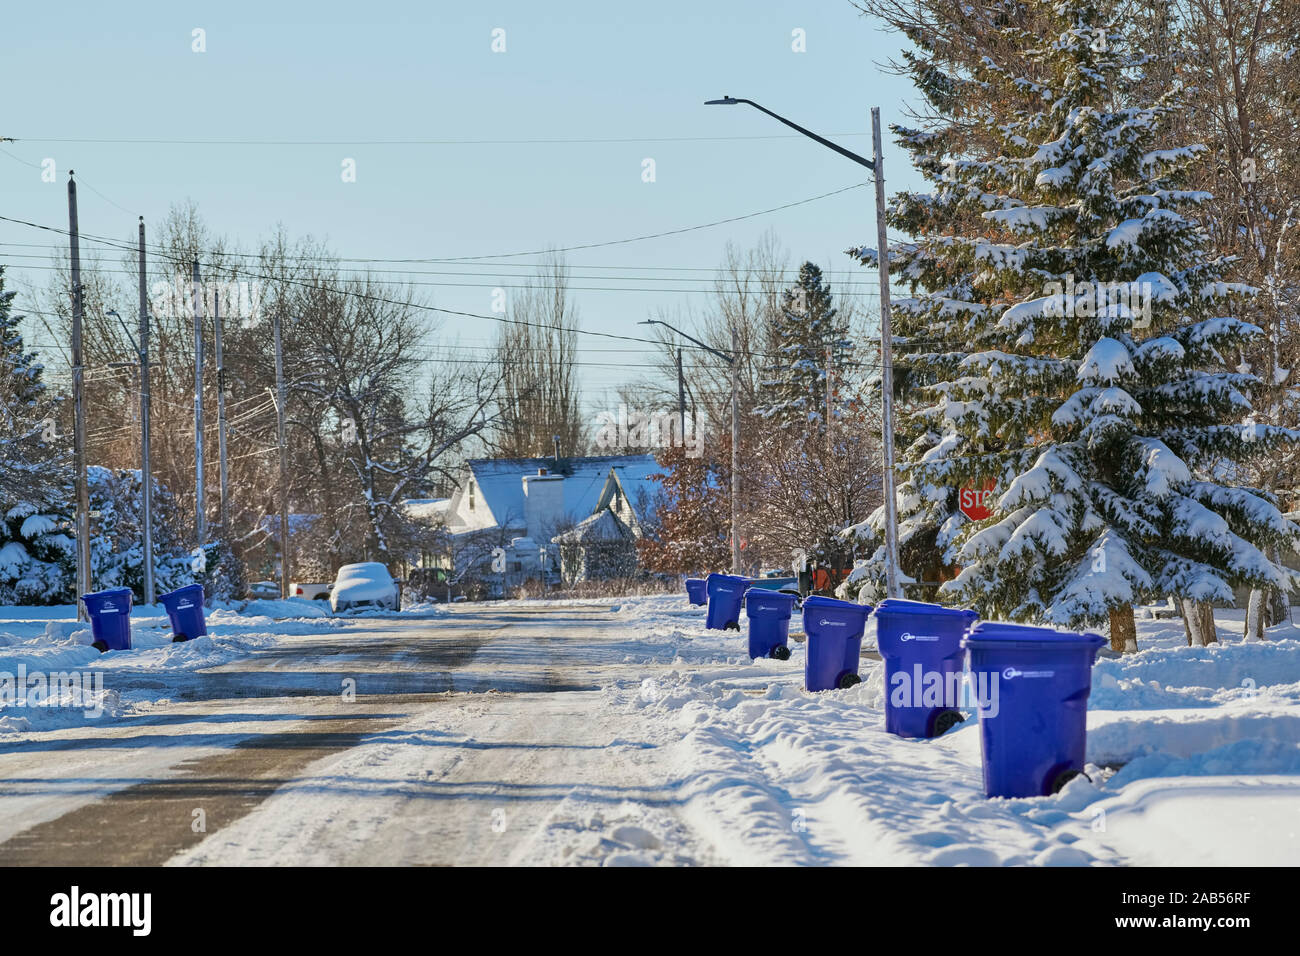 Solutions environnementales 360 a remporté le contrat en 2019 pour recycler ramasser à Claresholm en Alberta. Les corbeilles sont alignés en attente d'être vidés. Banque D'Images